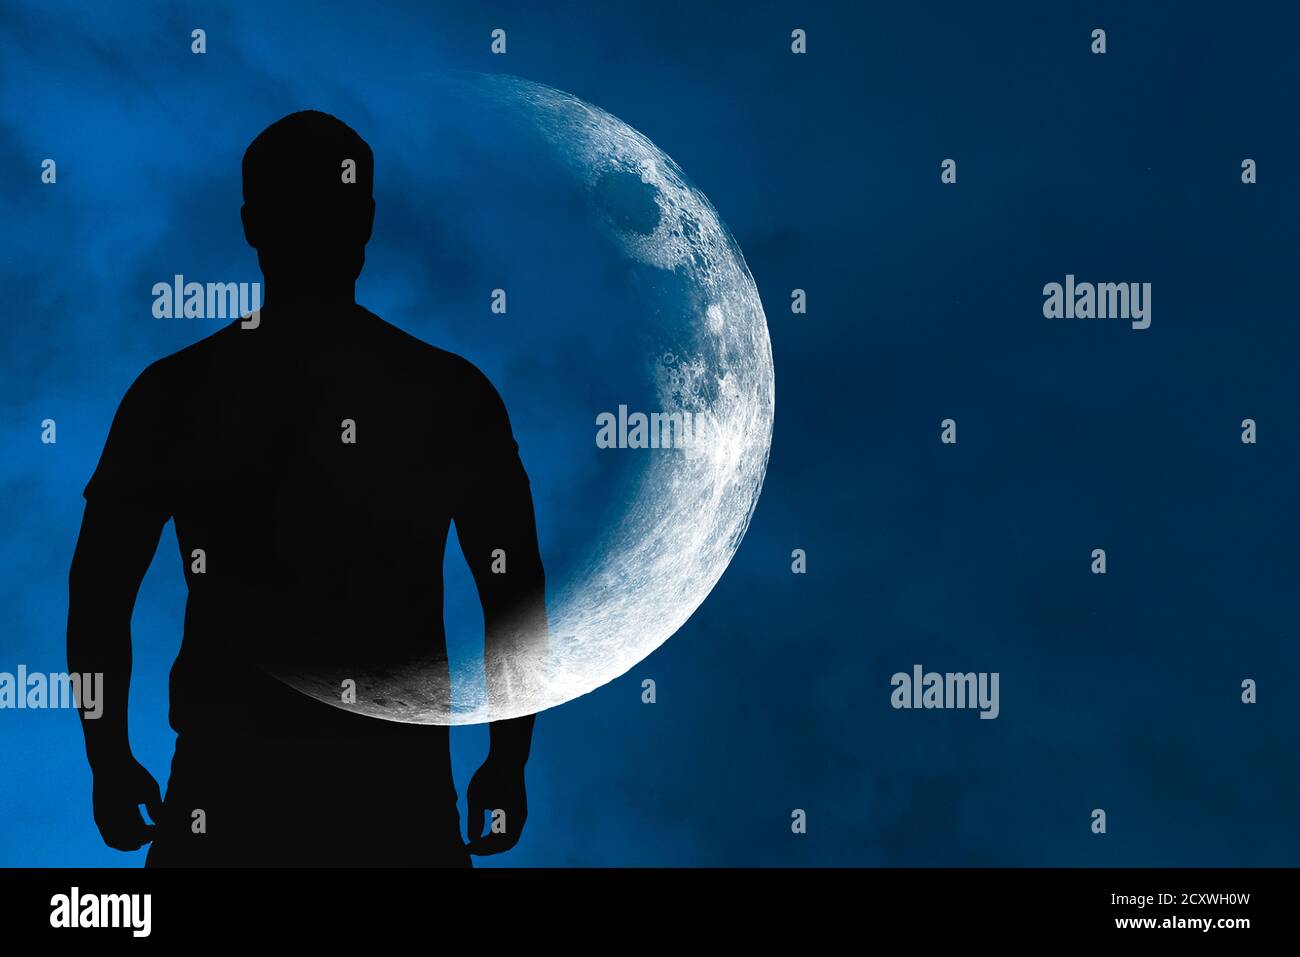 Silhouette des Menschen mit transparenter Halbmond oder Mond am Körper vor blauem Himmel in der Nacht, Konzeptbild über Raum, Astronomie und Astrologie Stockfoto